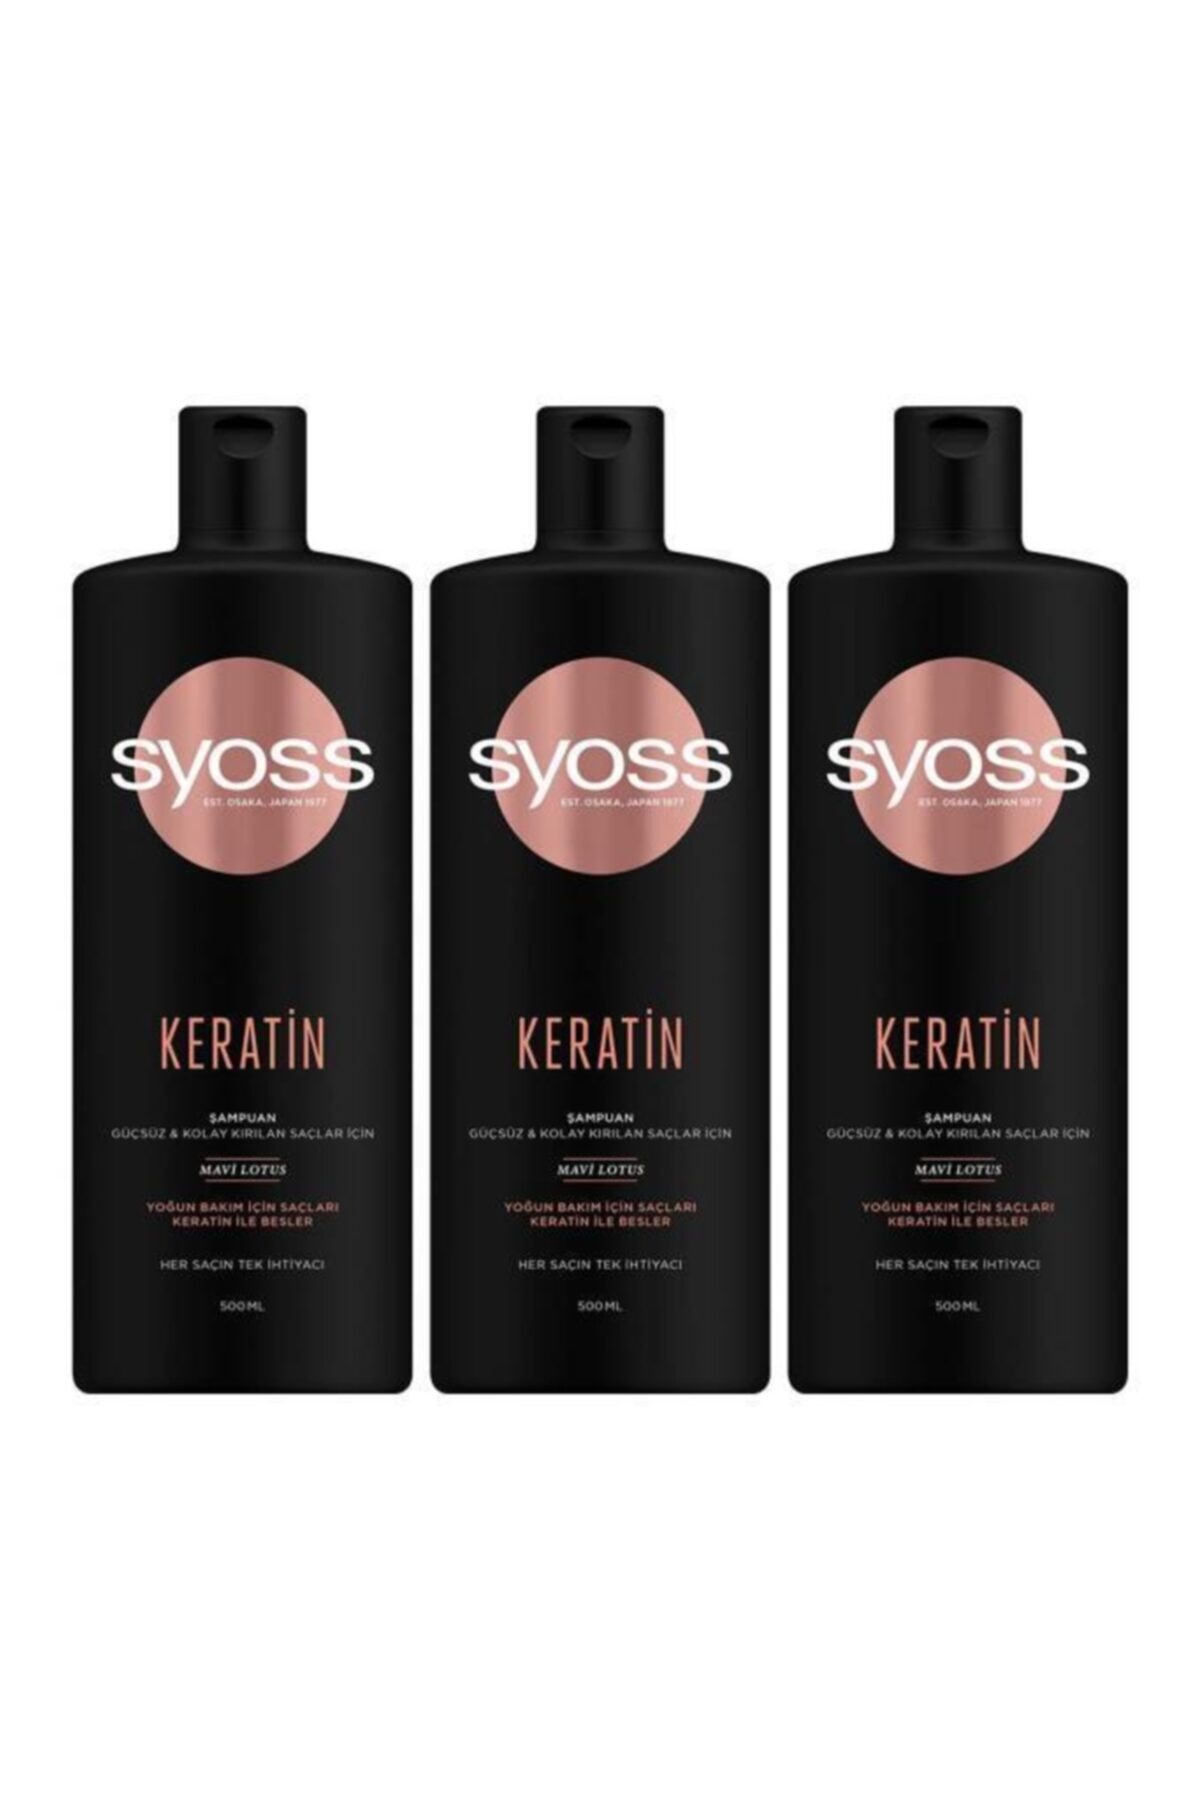 Syoss Keratin Mükemmelliği Şampuan 500 Ml 3'lü